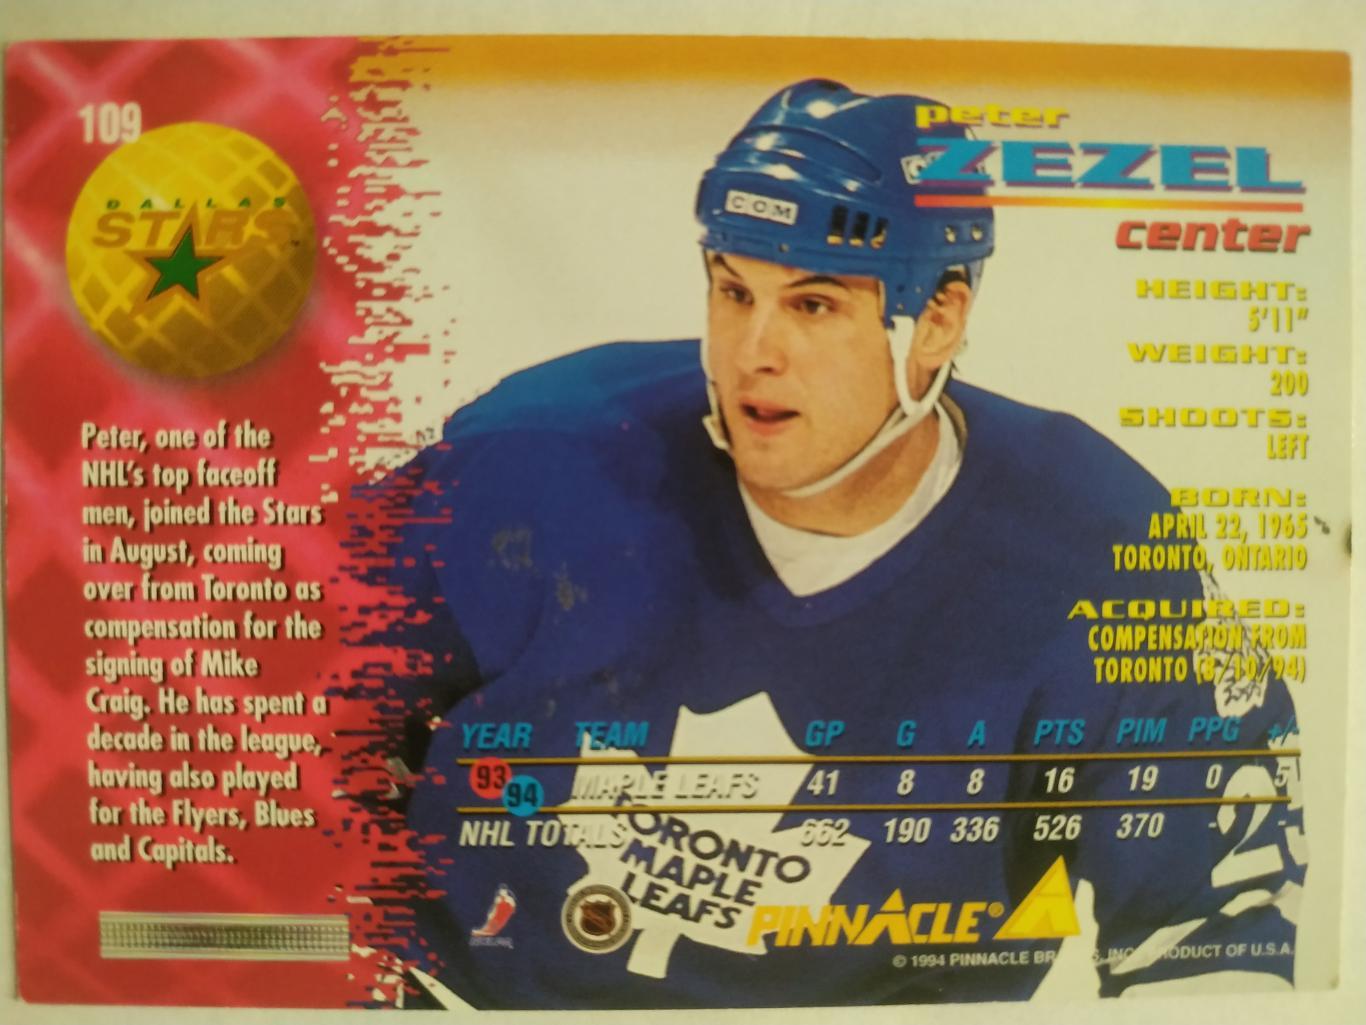 ХОККЕЙ КАРТОЧКА НХЛ PINNACLE 1994-95 NHL PETER ZEZEL DALLAS STARS #109 1